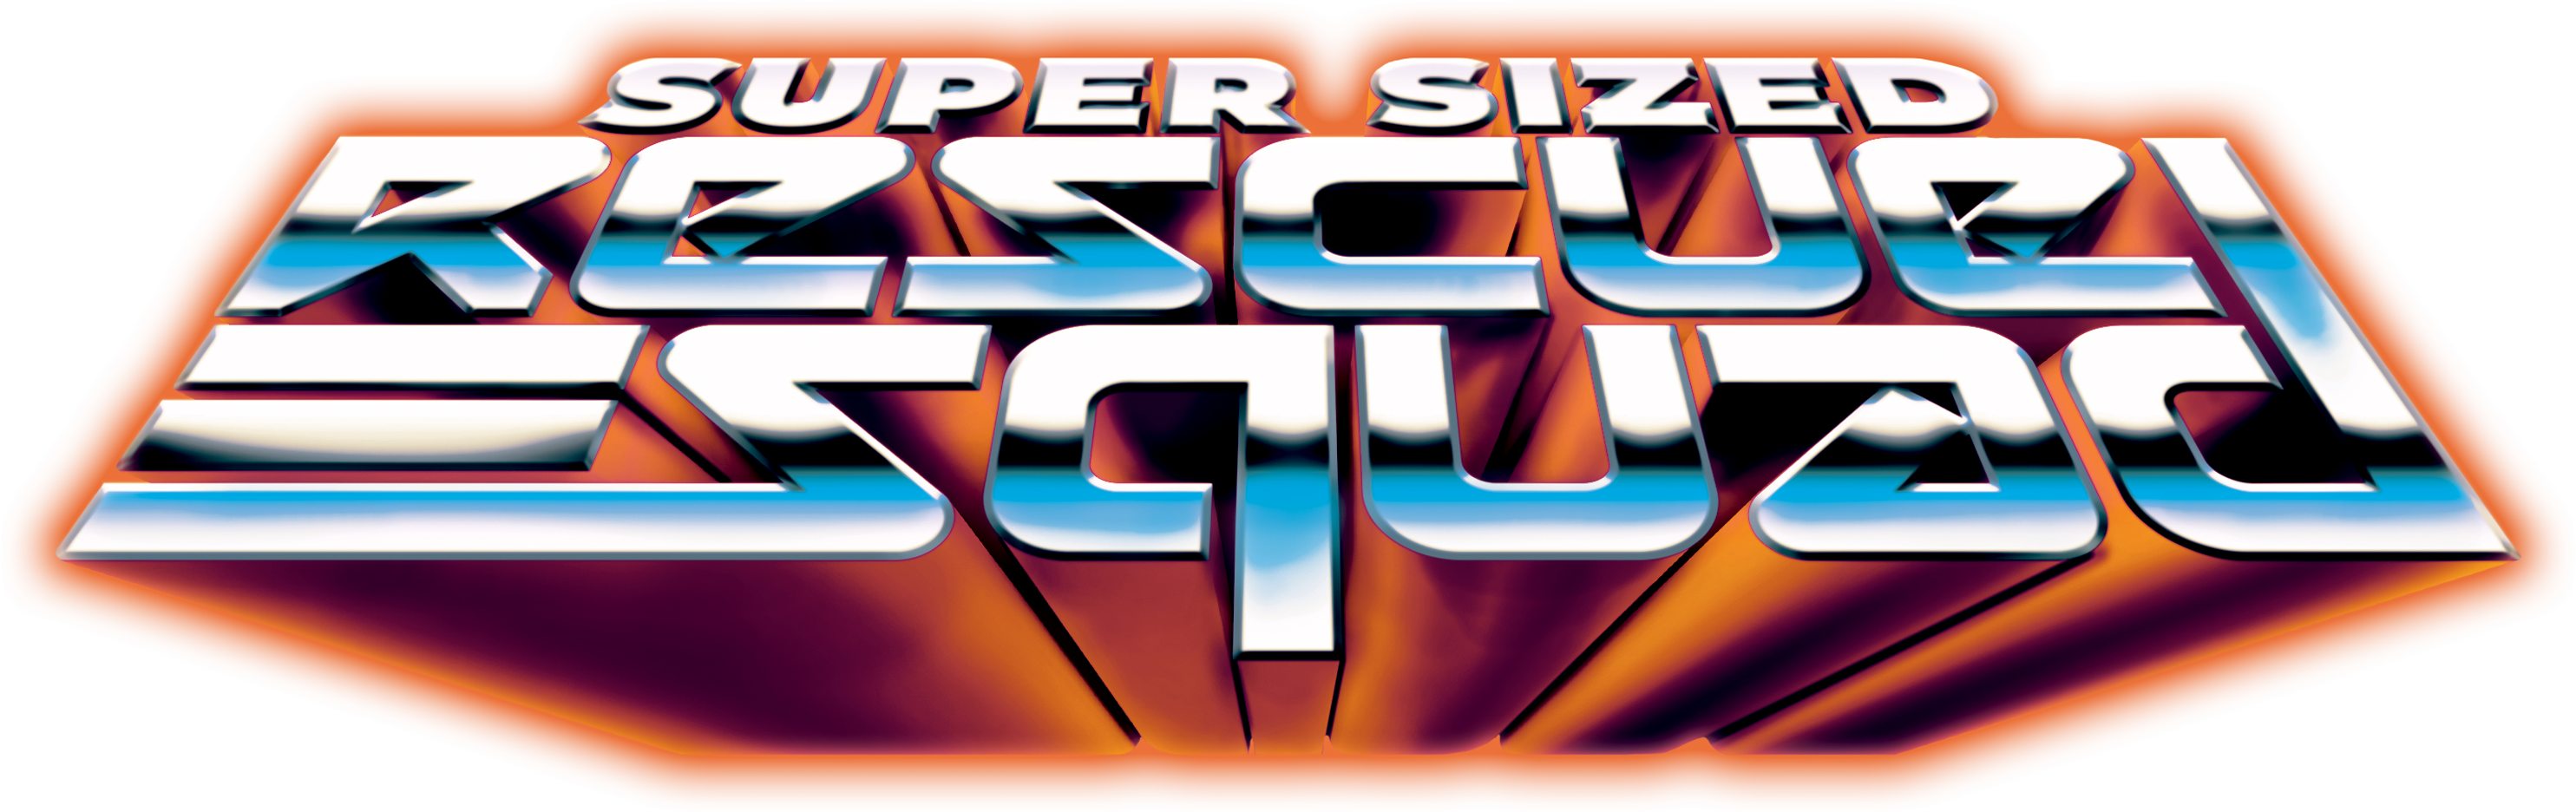 Super Sized Rescue Squad (Web)